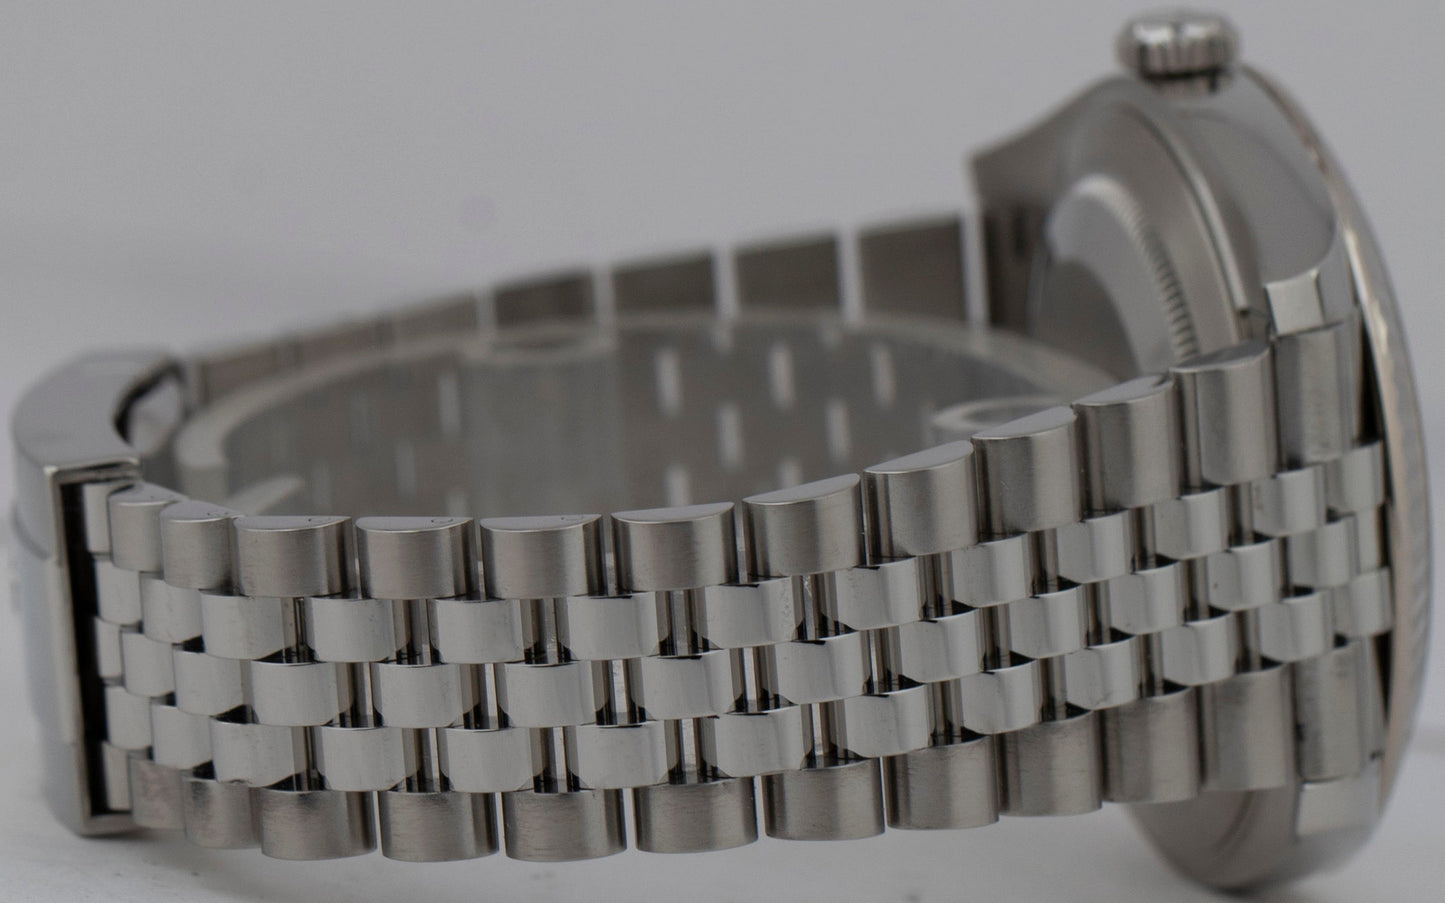 2022 Rolex DateJust Silver Stainless Steel Jubilee Watch 126334 41mm Watch B+P